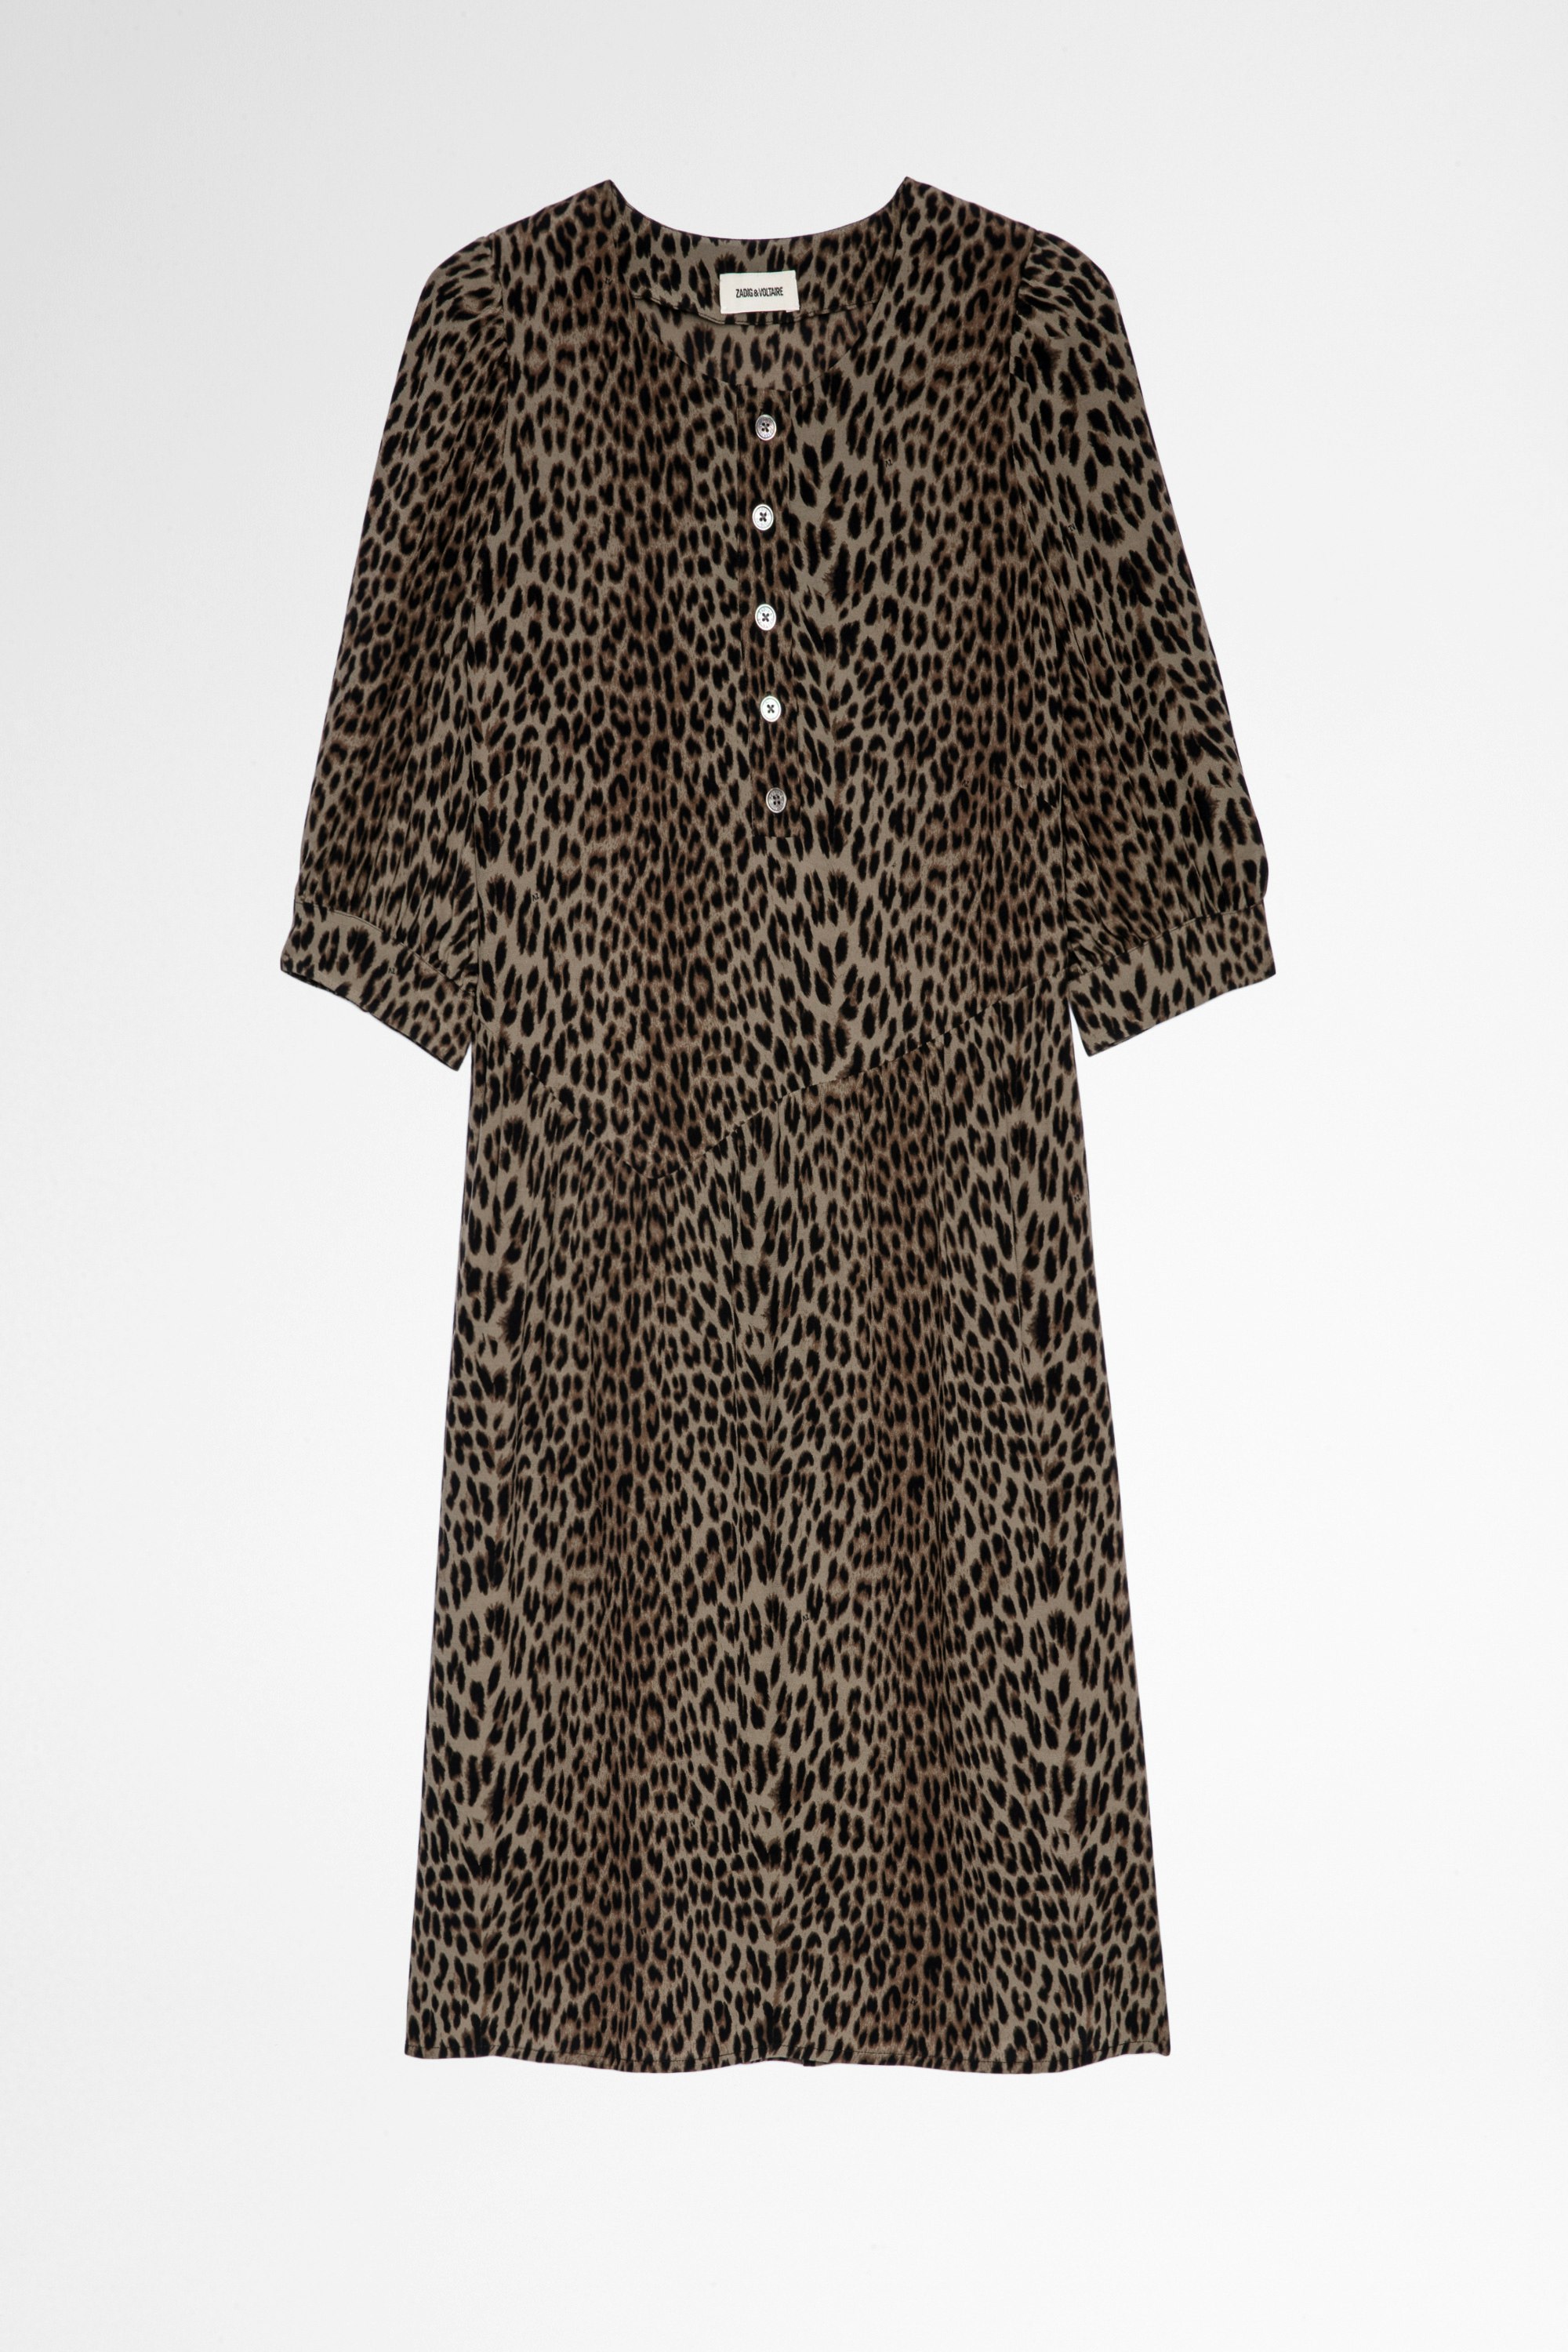 Abito Risla Leopard Abito corto color kaki con stampa leopardata, donna. Realizzato con fibre provenienti da foreste gestite in modo sostenibile